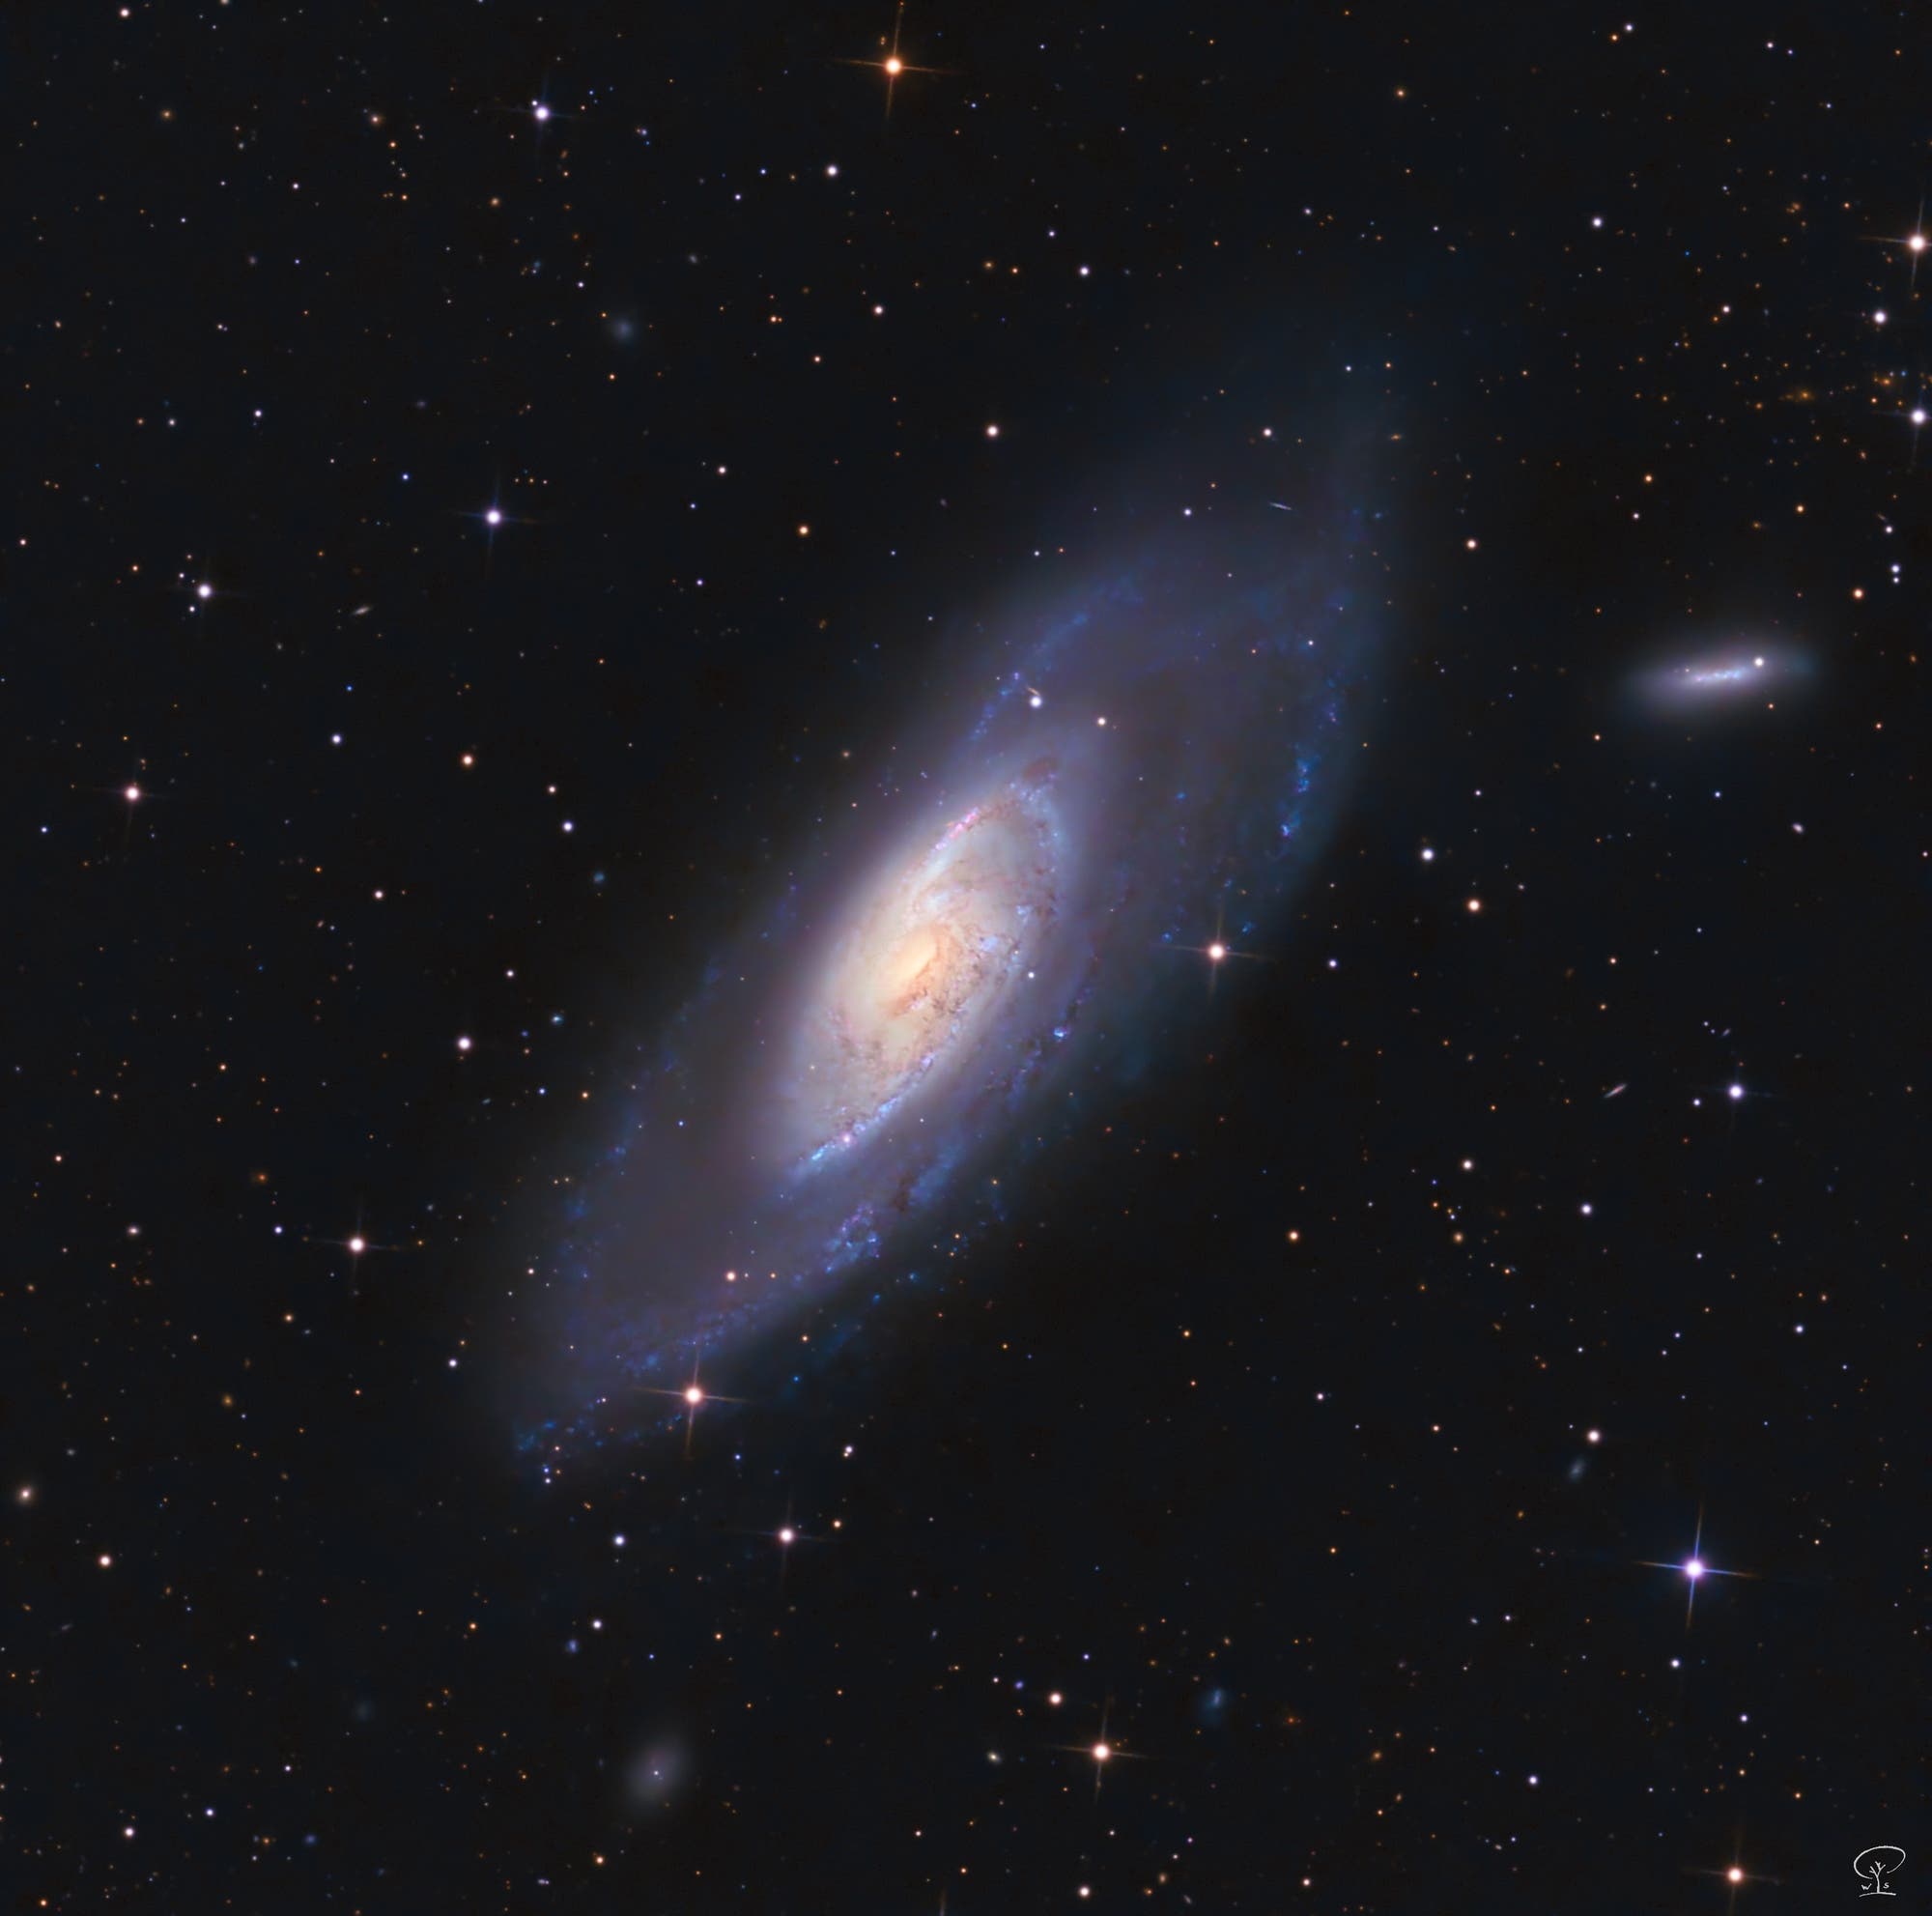 Messier 106